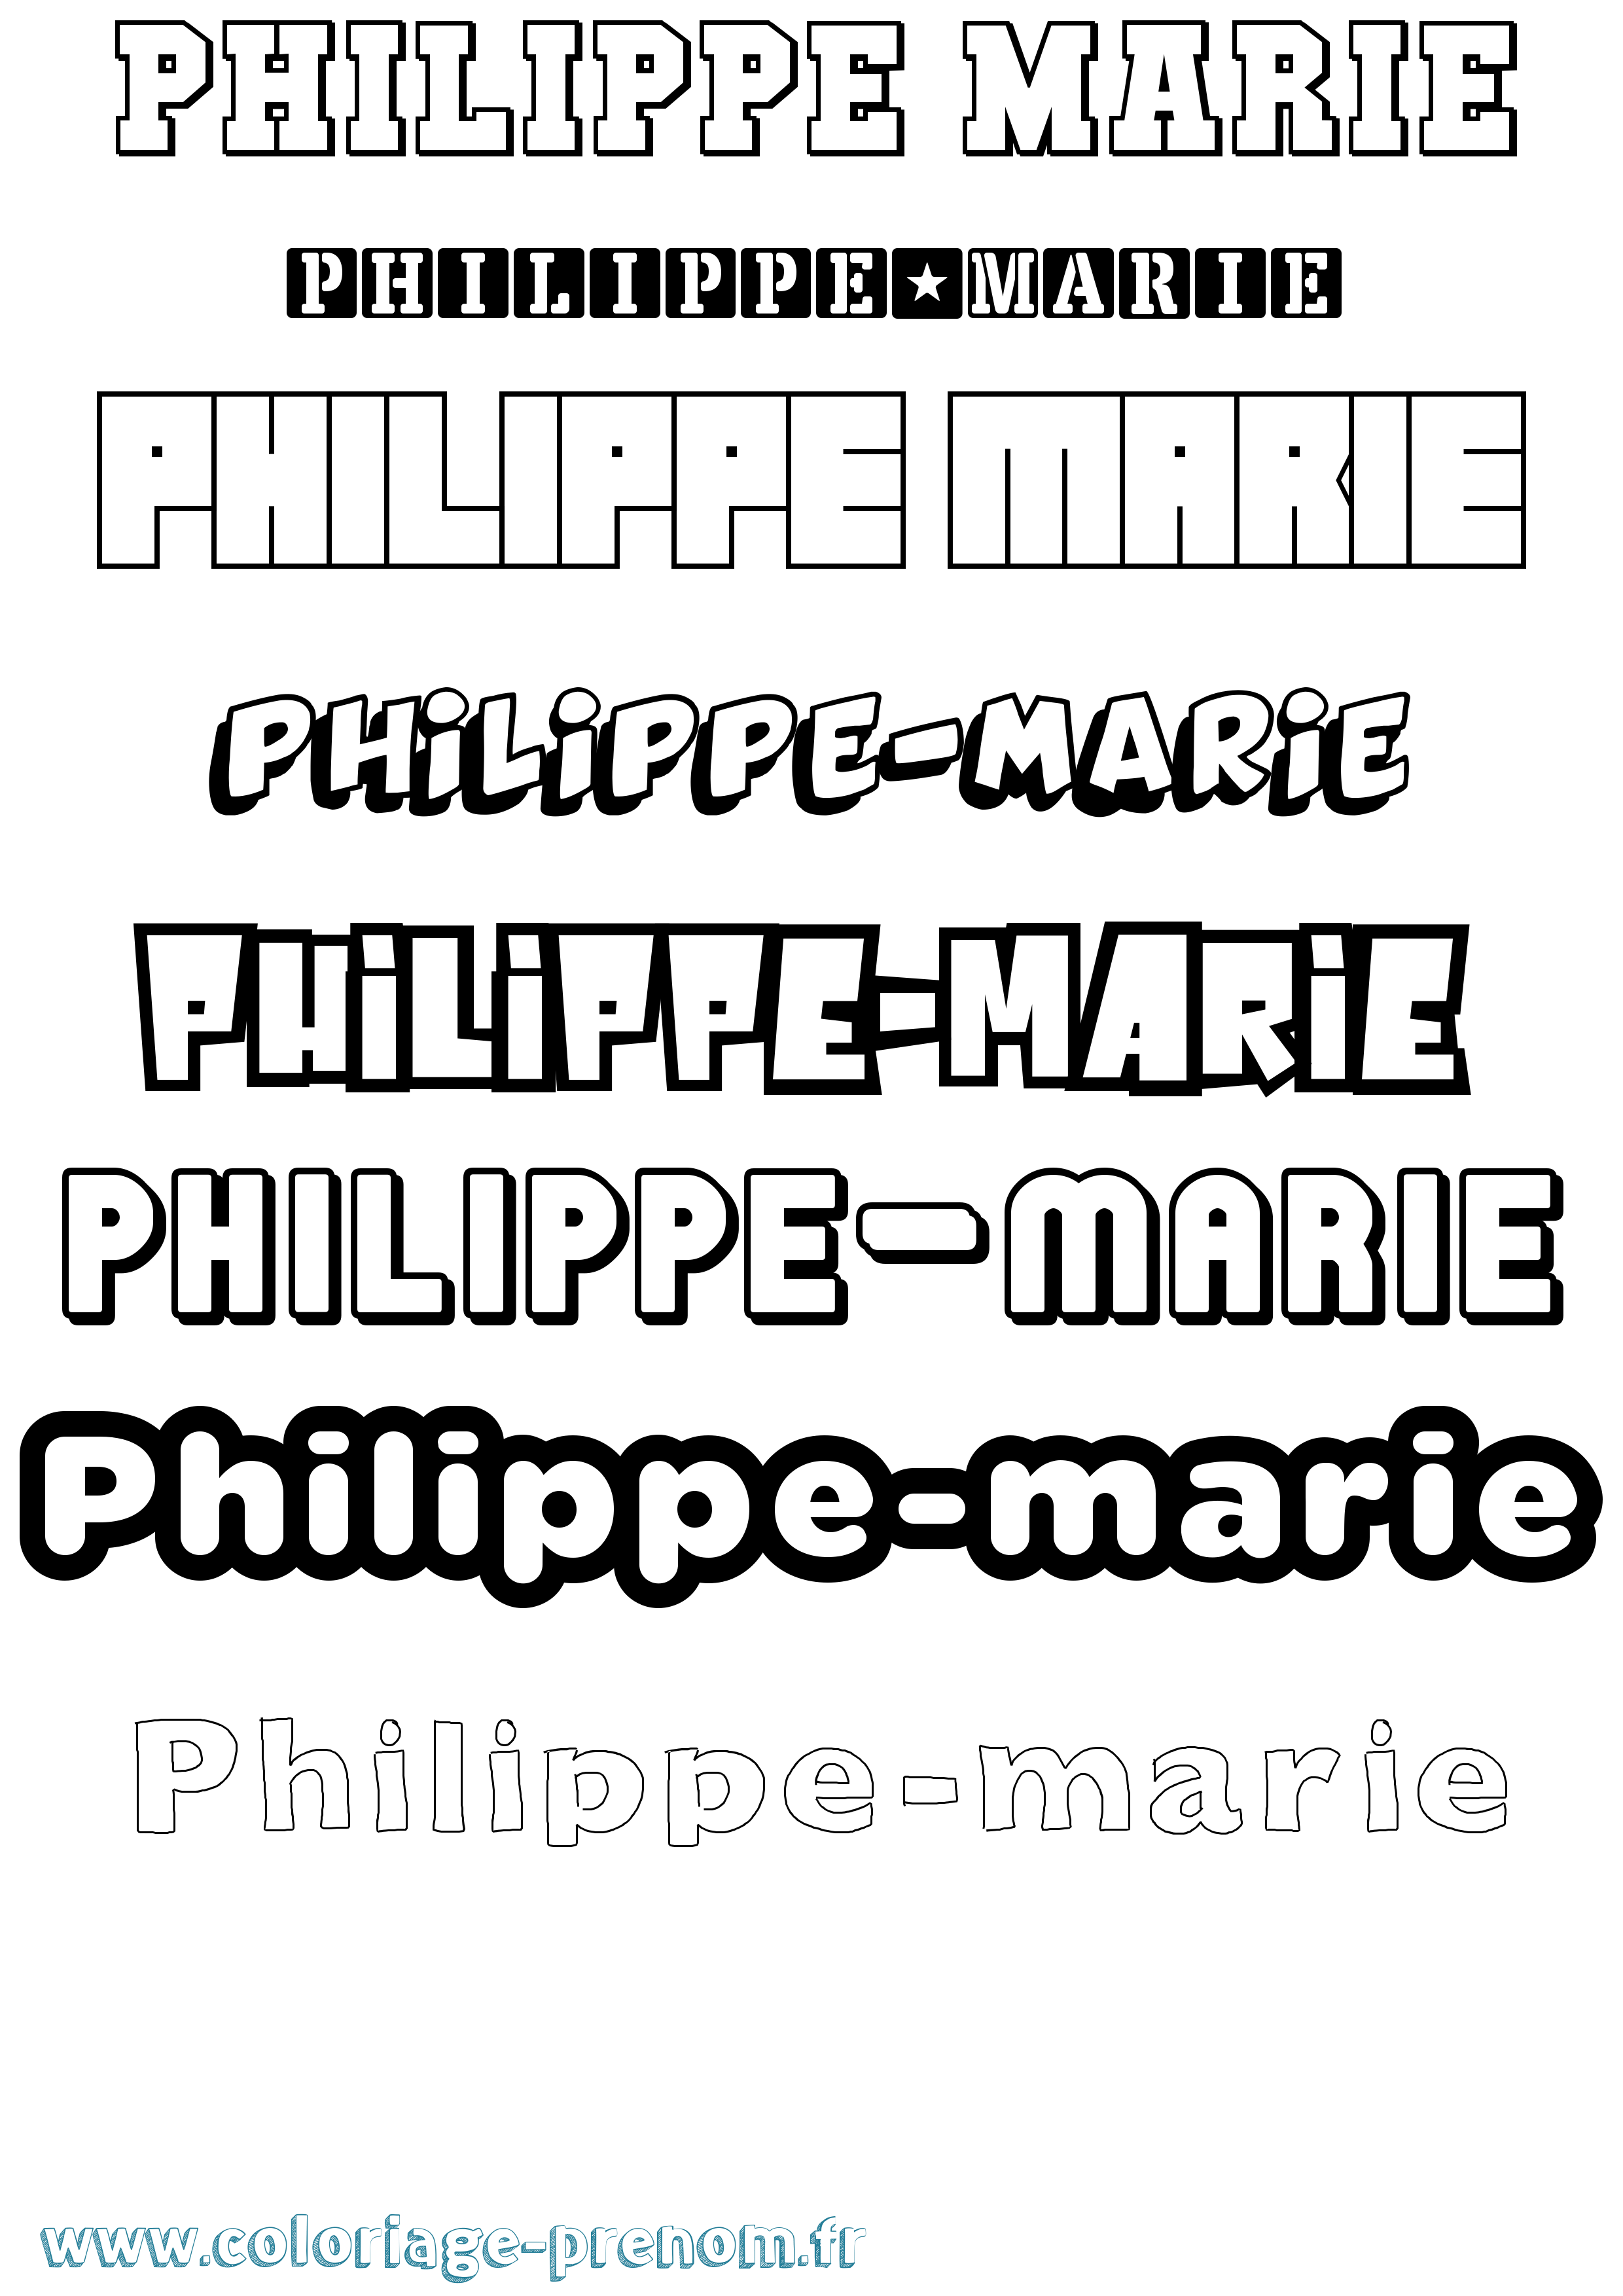 Coloriage prénom Philippe-Marie Simple